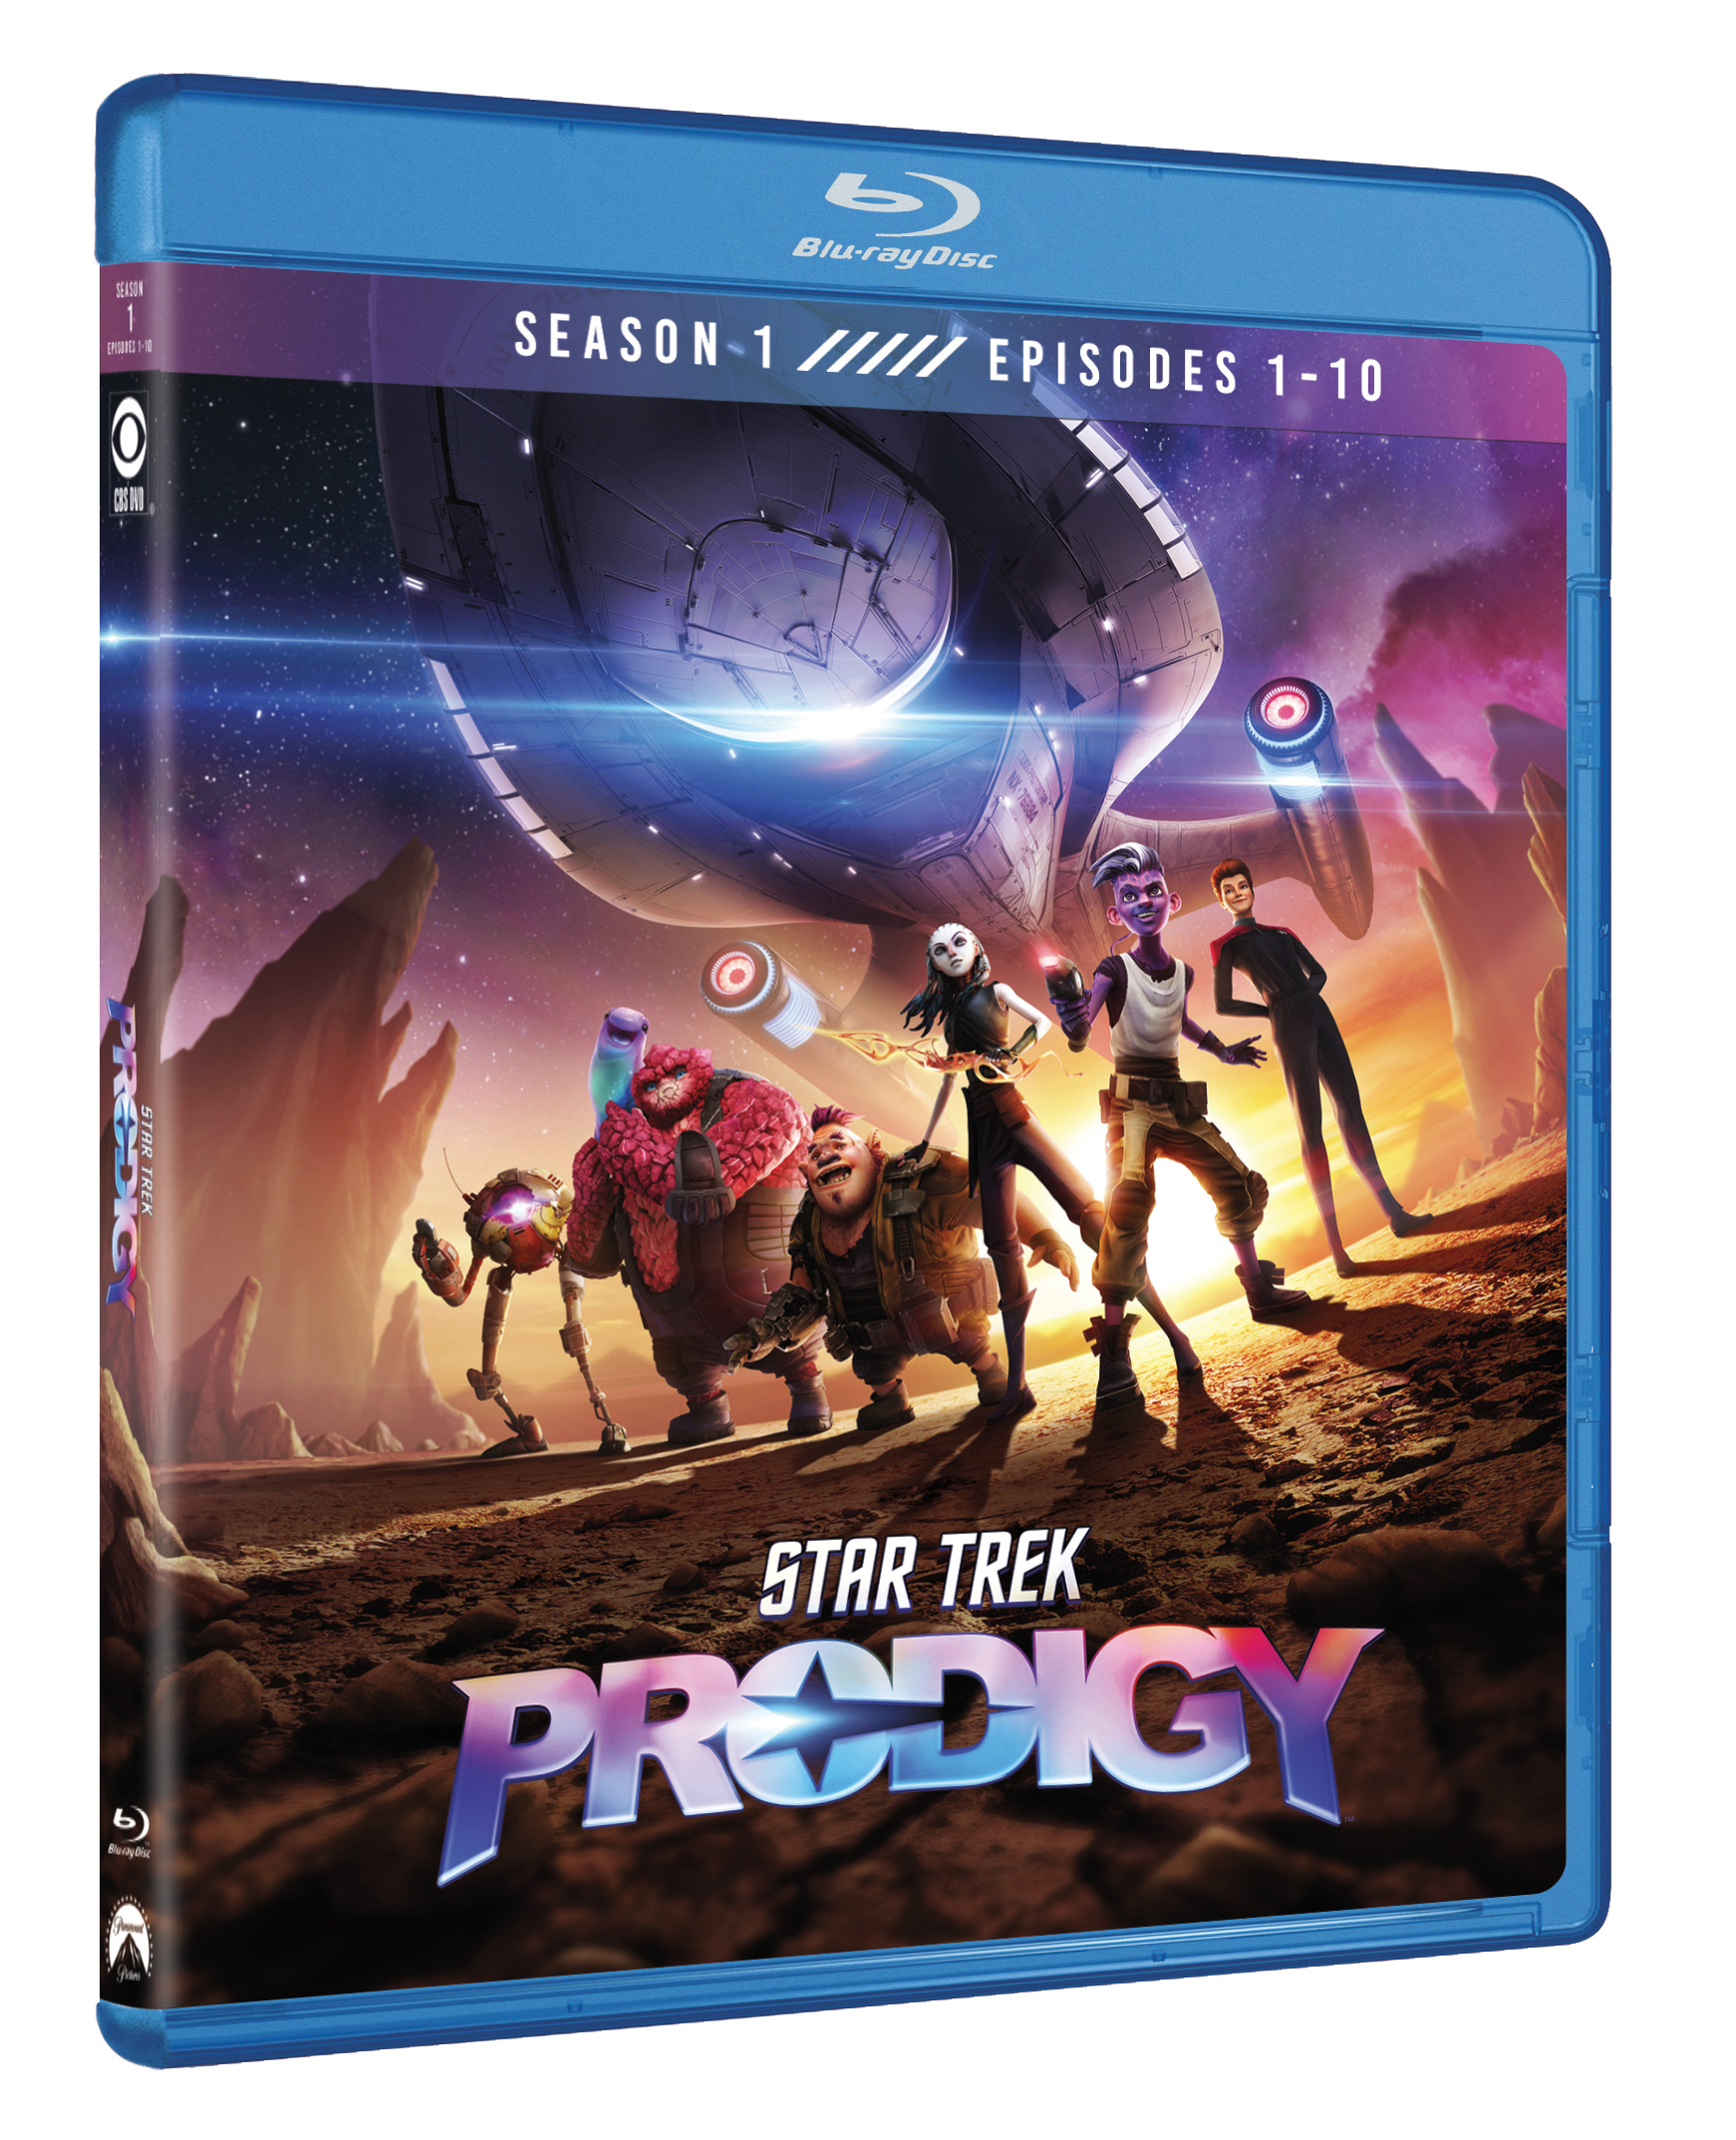 Star Trek: Prodigy Season 1, Episodes 1-10 [Blu-ray] - Best Buy